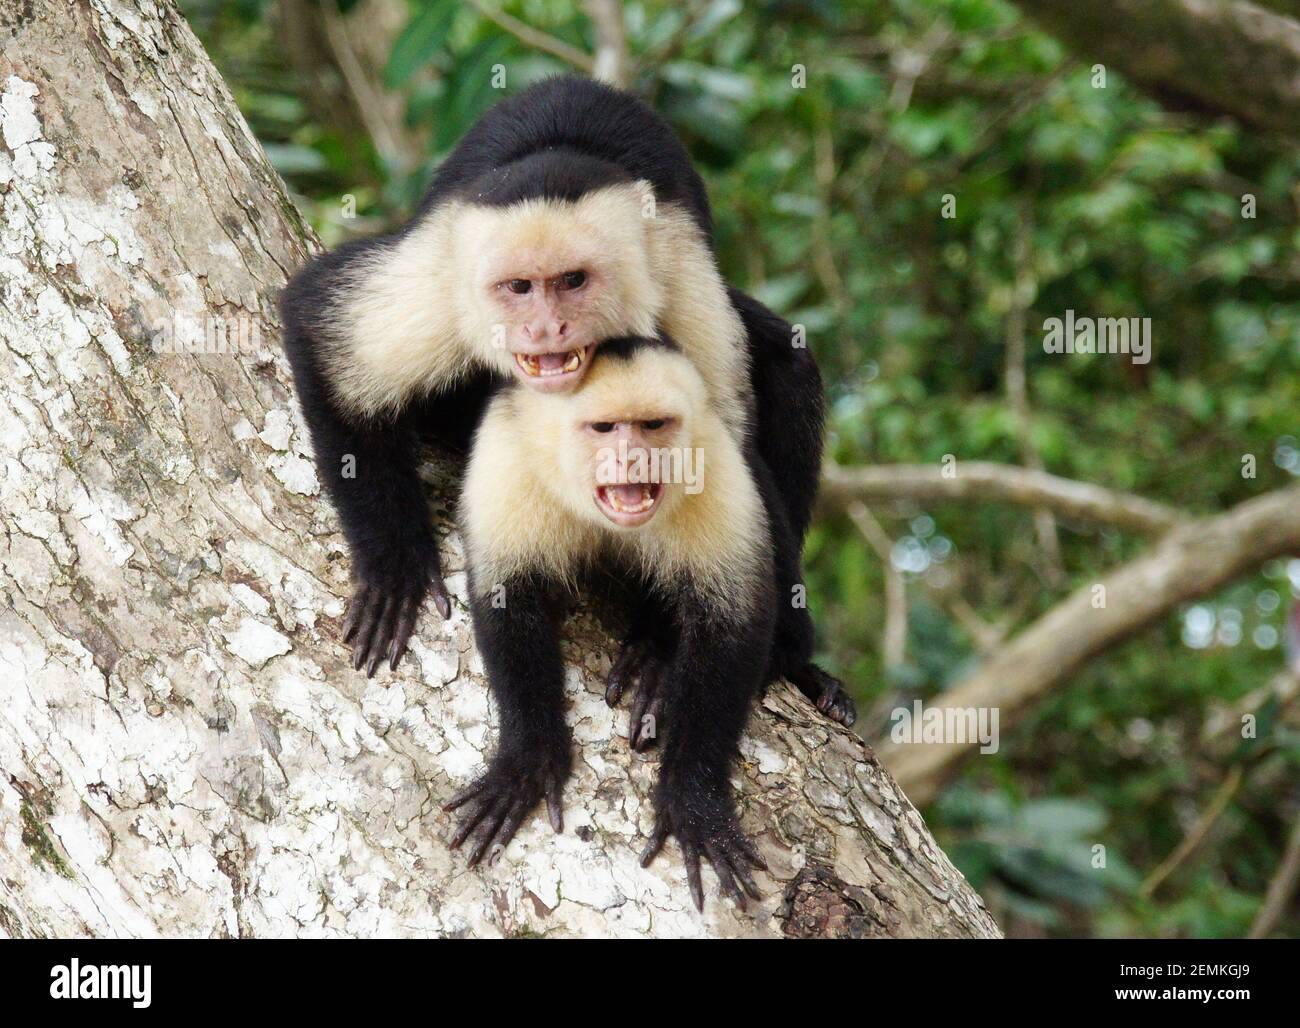 Deux singes capucins en colère assis l'un sur l'autre sur la défensive position agressive montrant les dents et les cris Banque D'Images